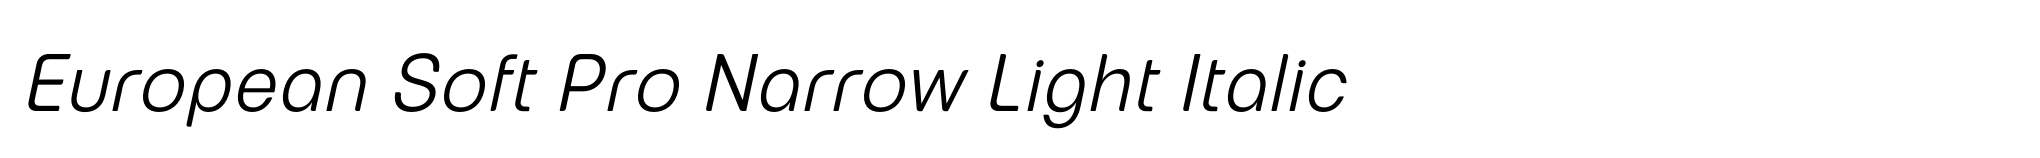 European Soft Pro Narrow Light Italic image